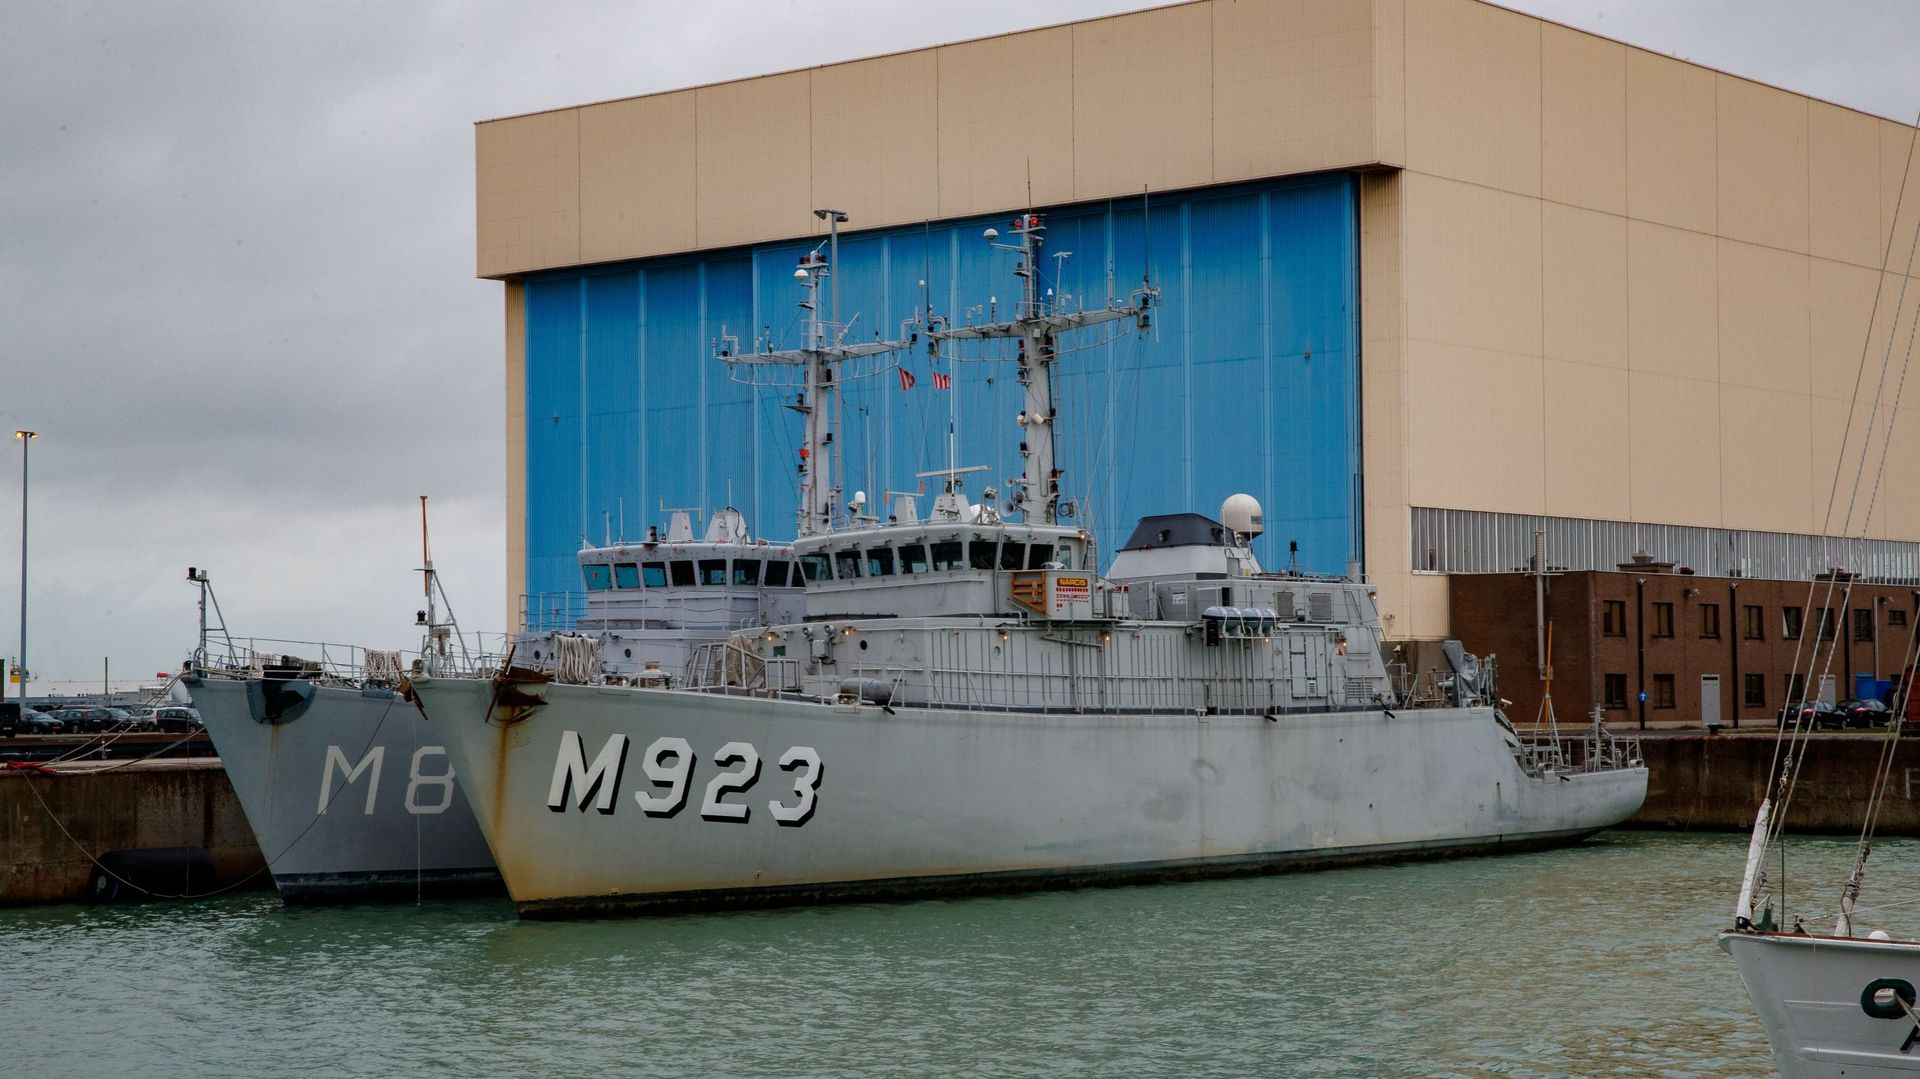 Le M923 Narcis lors d'une visite à la base navale de Zeebrugge pour rencontrer la composante de la Marine belge, lundi 27 janvier 2020.